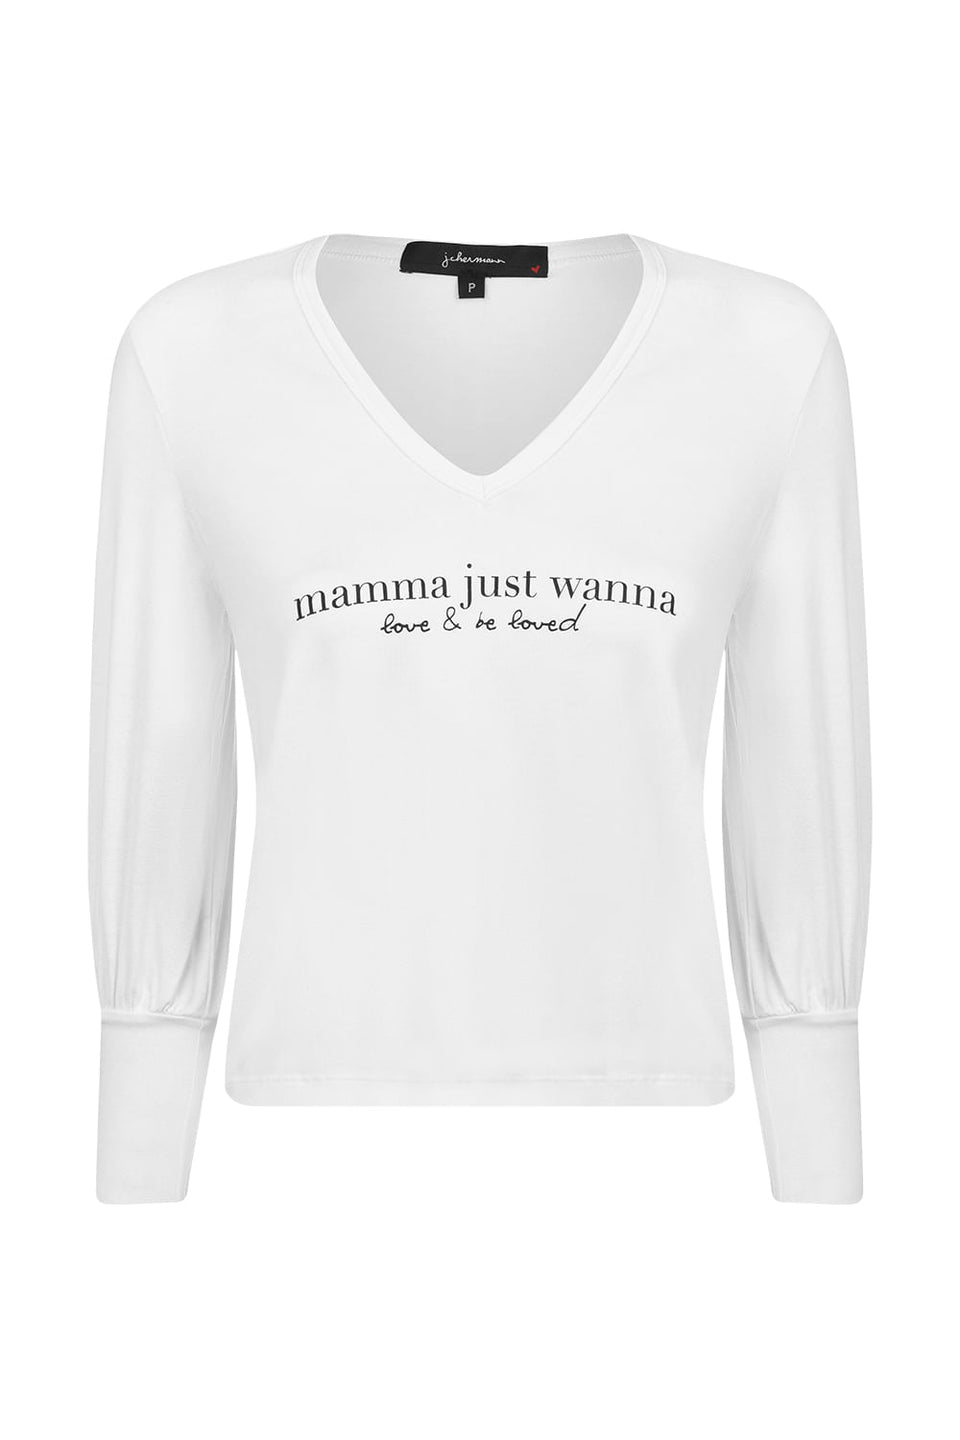 Camiseta Mamma Just  Wanna